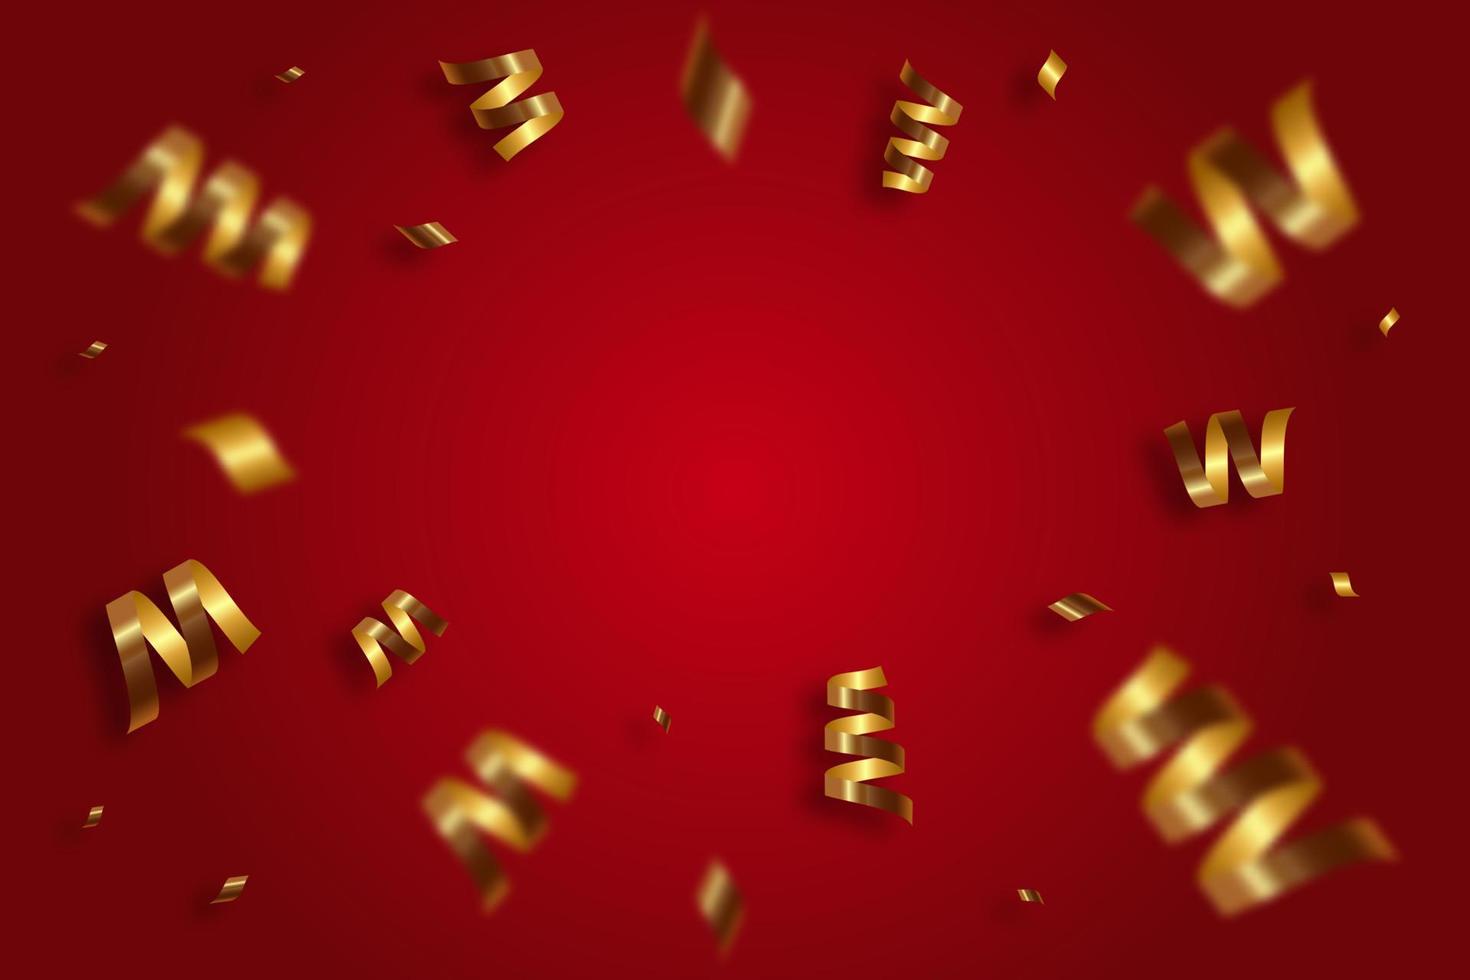 caindo confete dourado brilhante, fita, serpentina sobre fundo vermelho. ouropel festivo brilhante de cor dourada. vetor